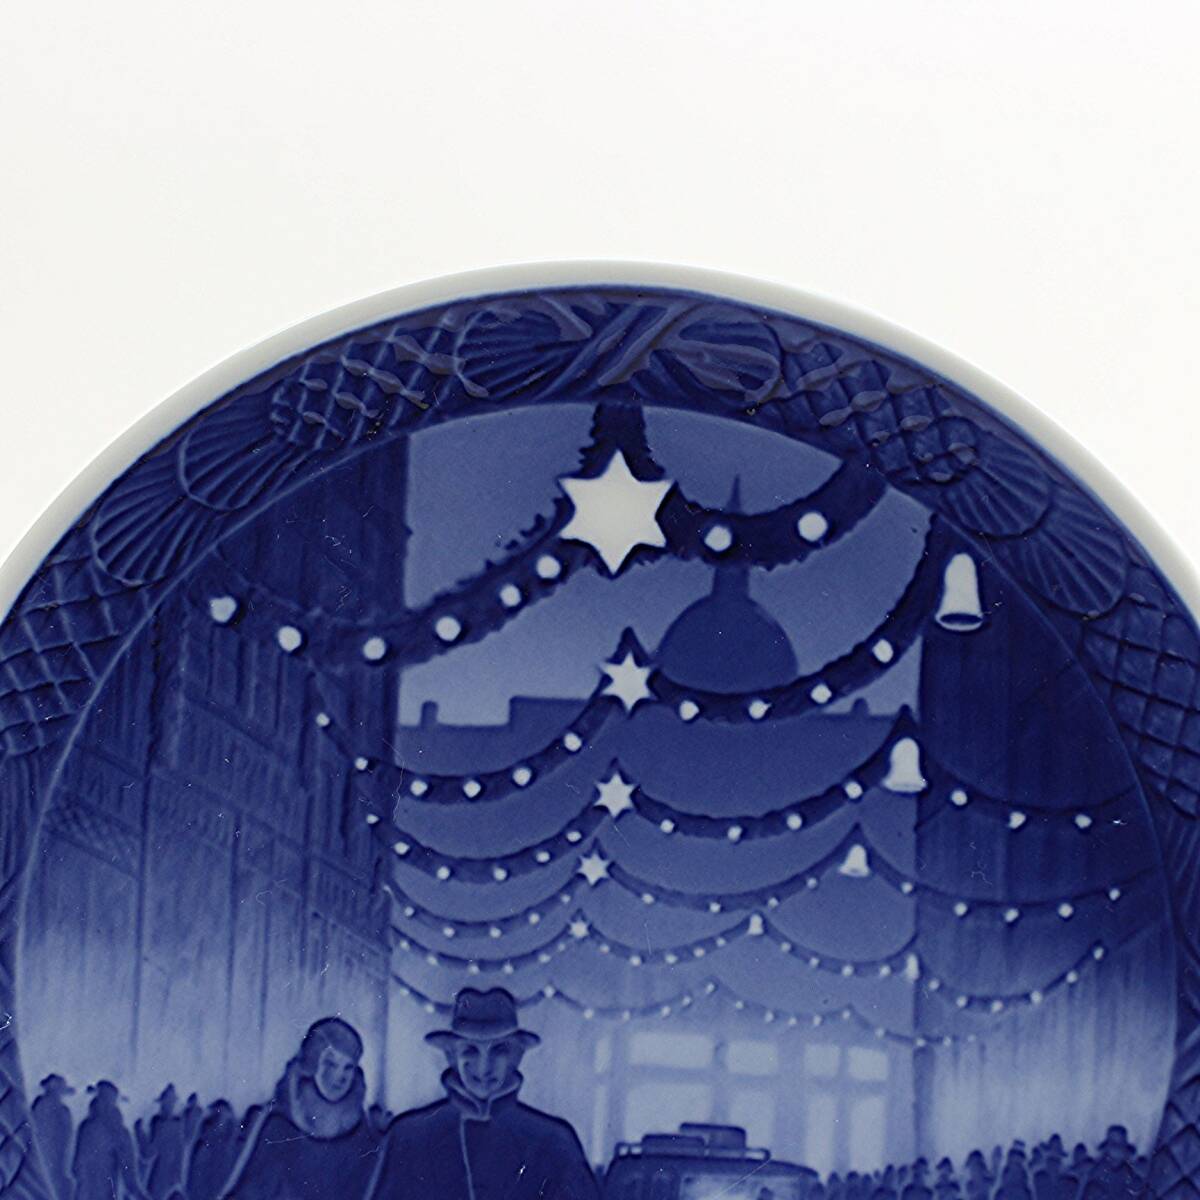 希少 1937年 ロイヤルコペンハーゲン イヤープレート 「コペンハーゲンのクリスマス風景」 フランス語版 北欧 デンマーク の 陶磁器 wwww8